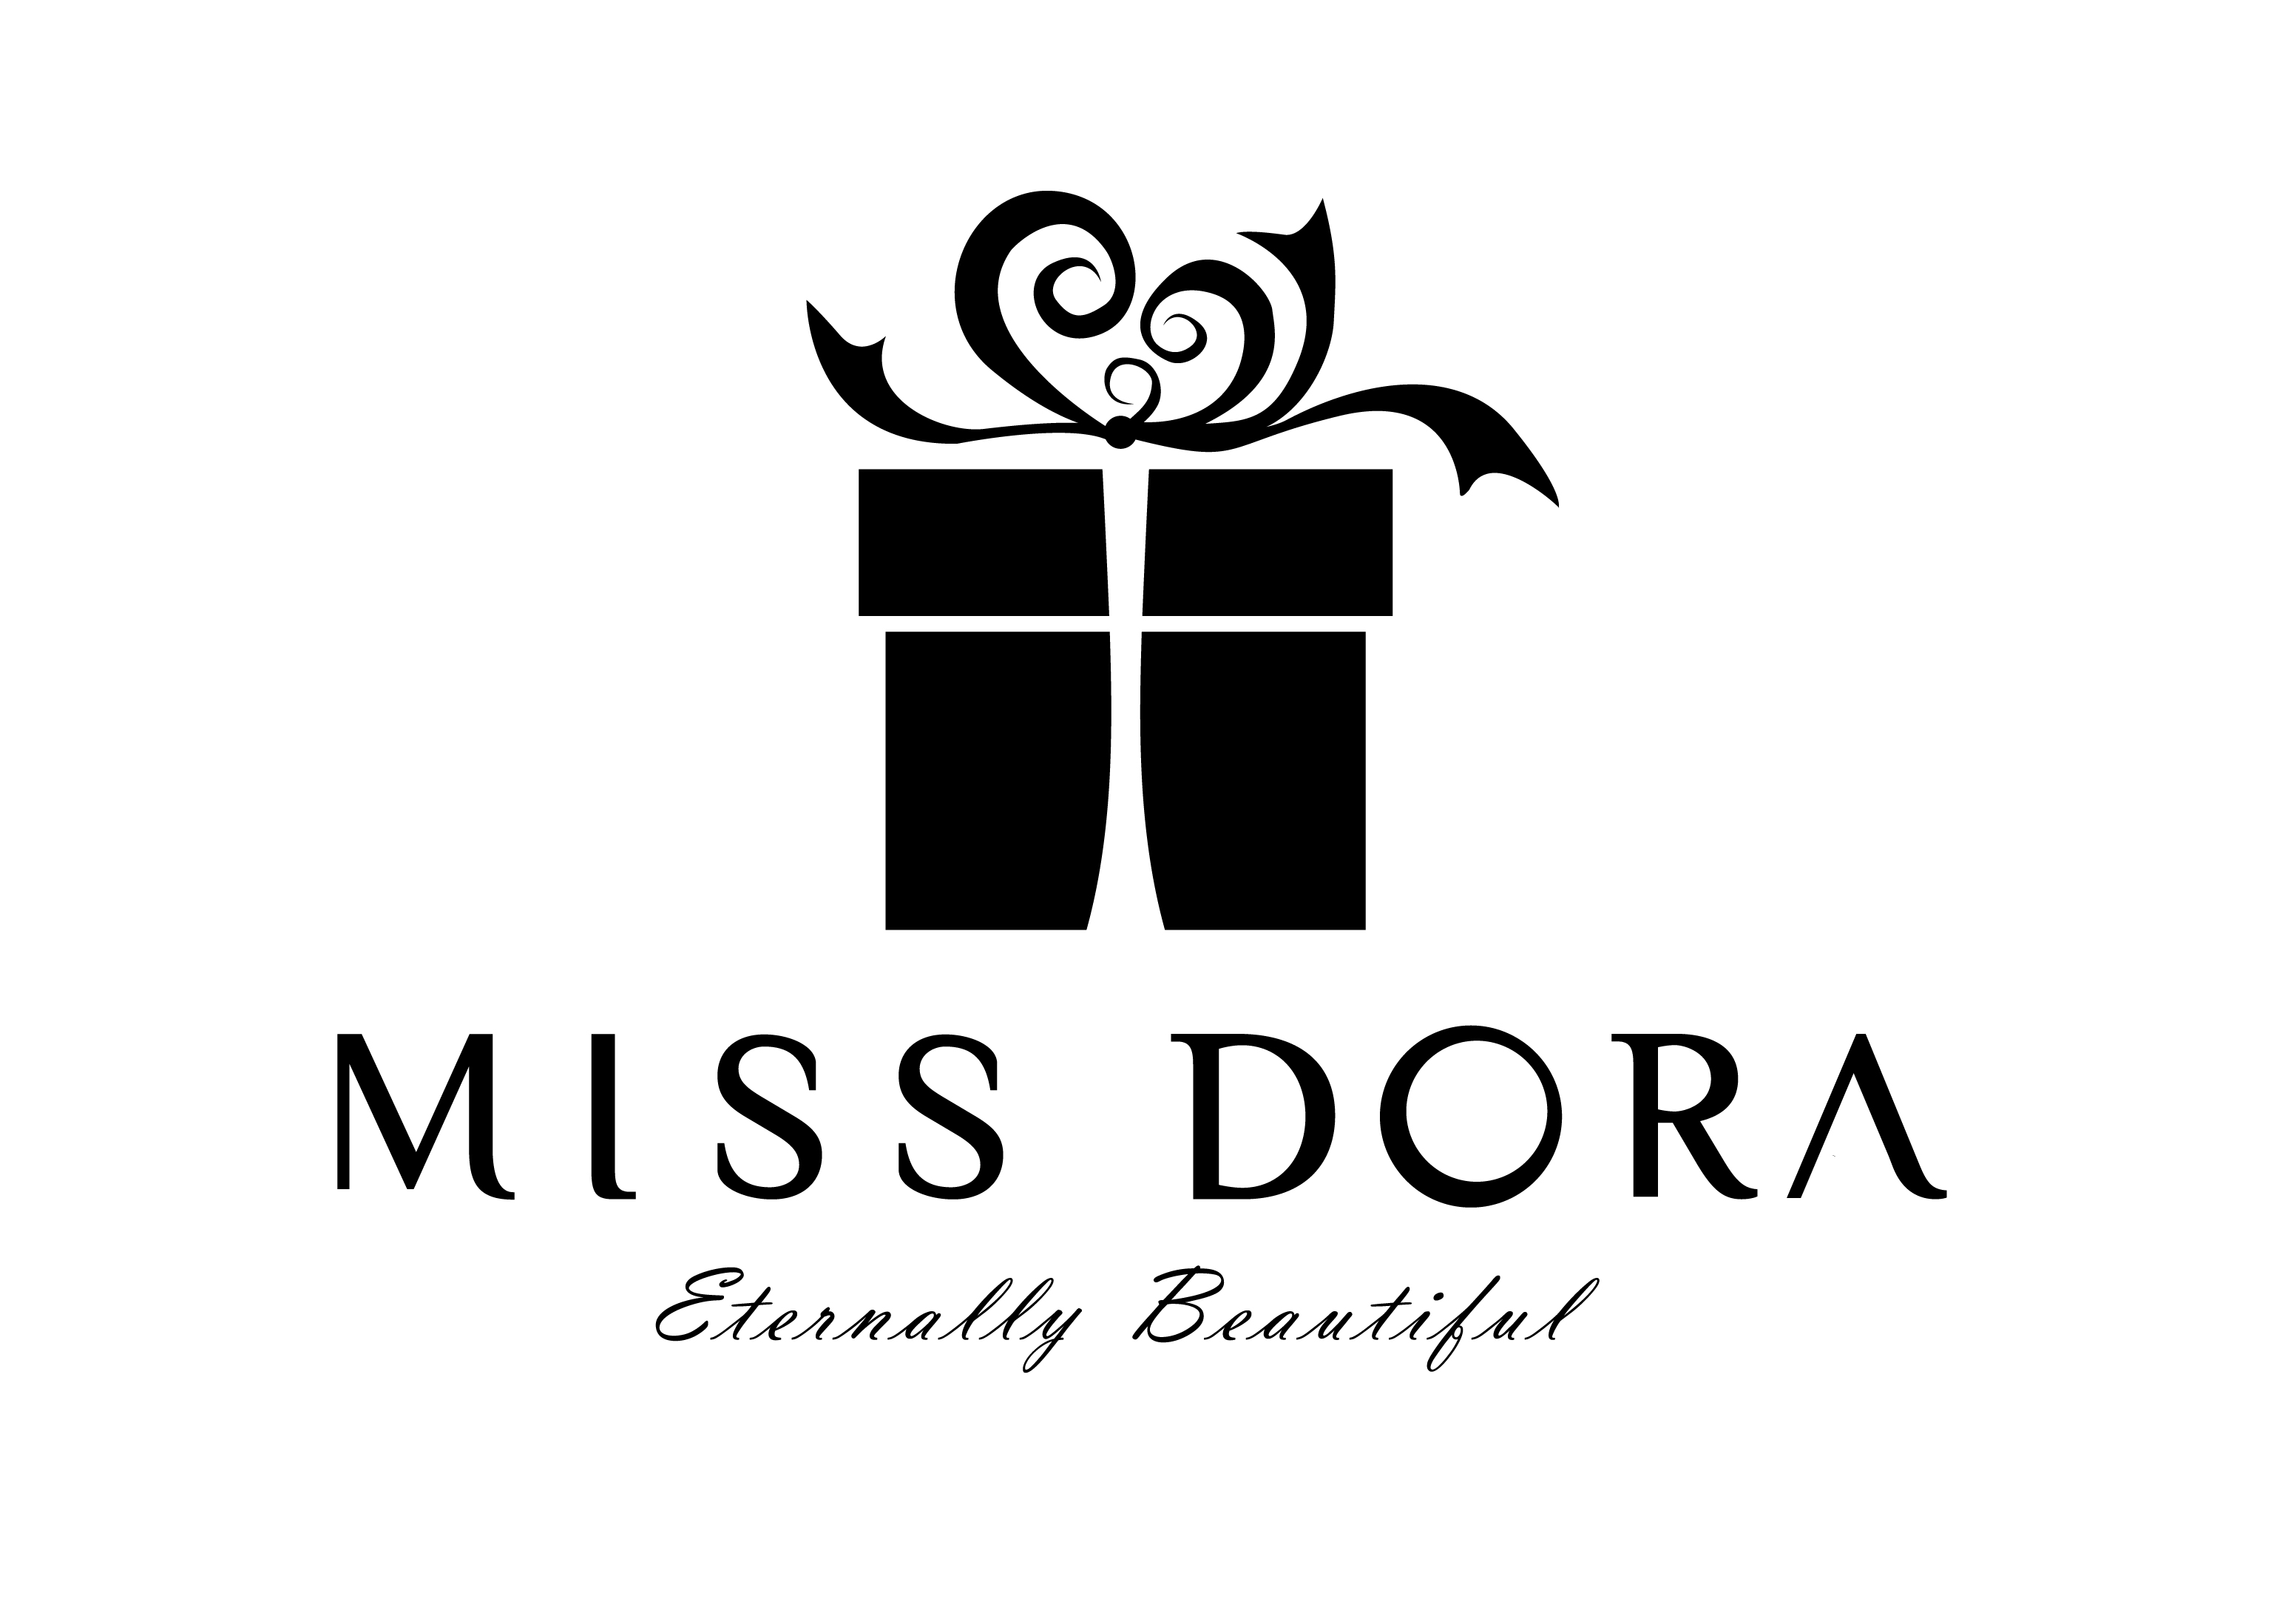 MISS DORA